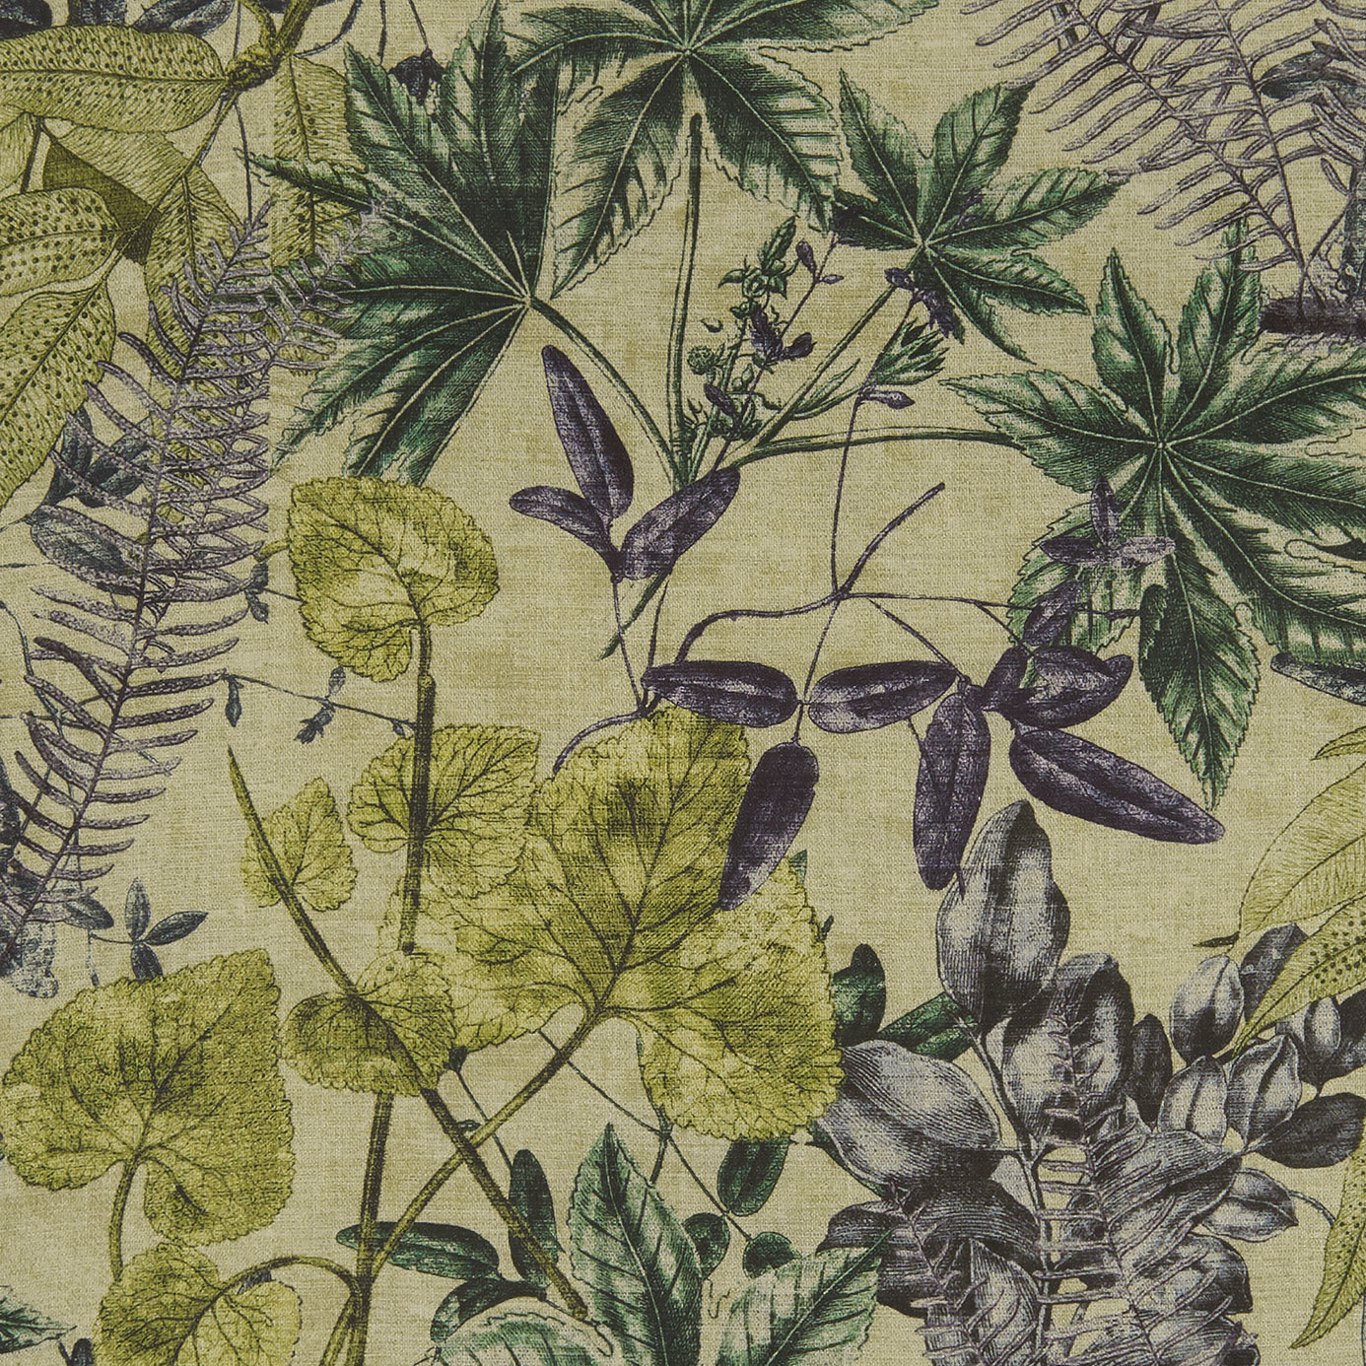 Madagascar Forest Fabric by CNC